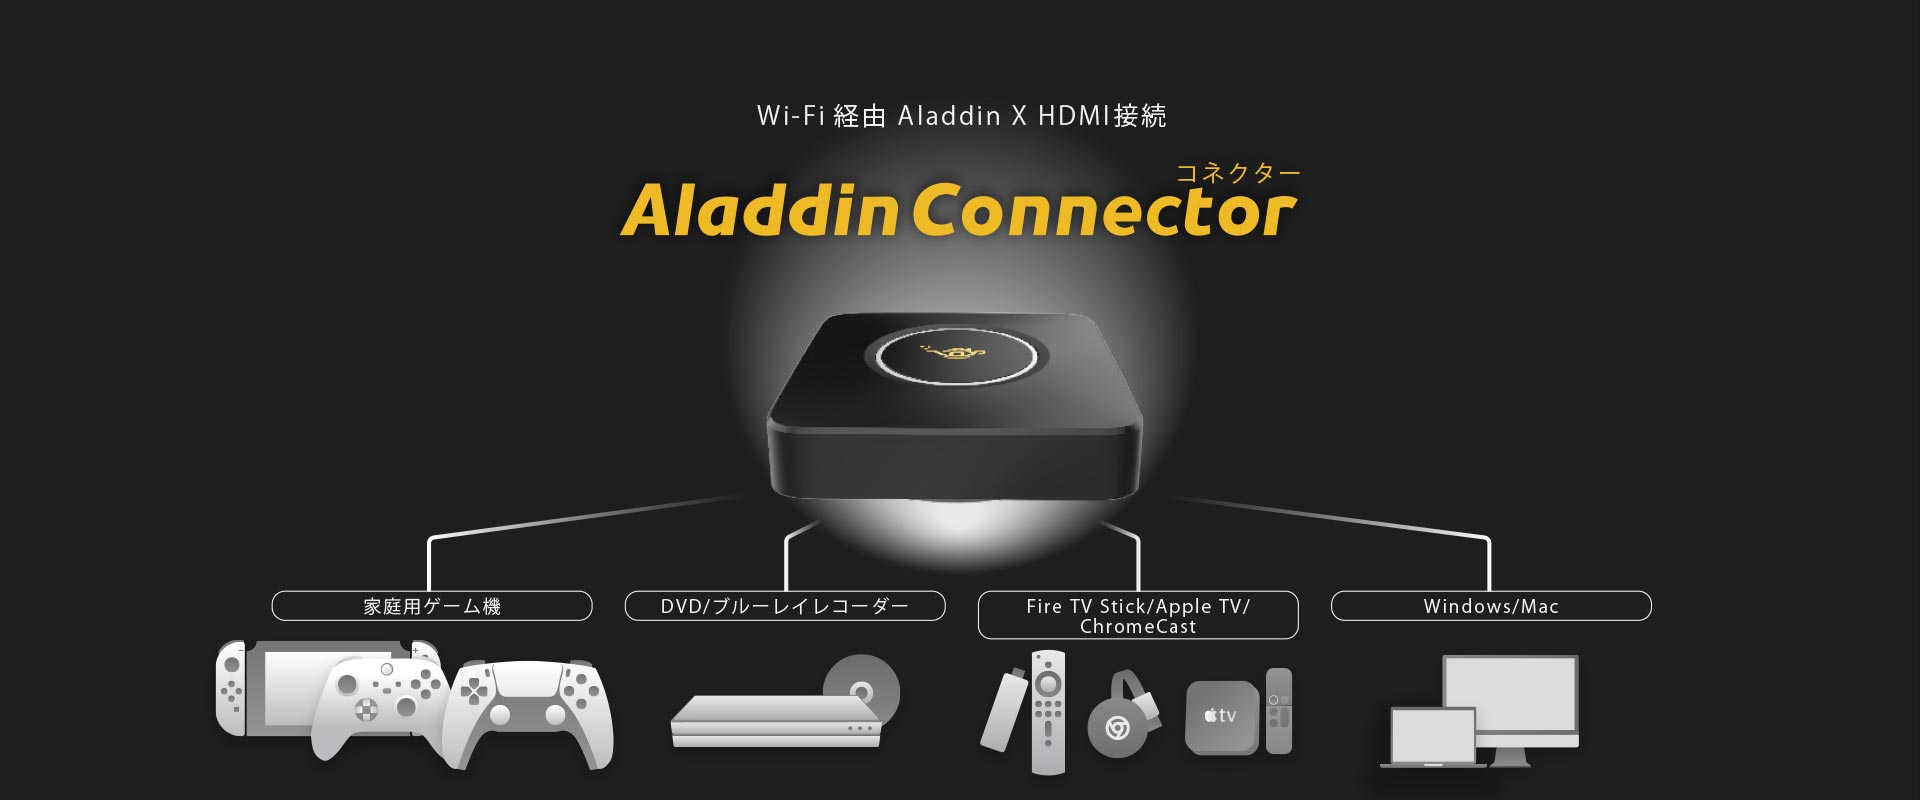 Aladdin connecter（アラジン コネクター）でHDMI接続が可能。ワイヤレスだから配線の心配がありません